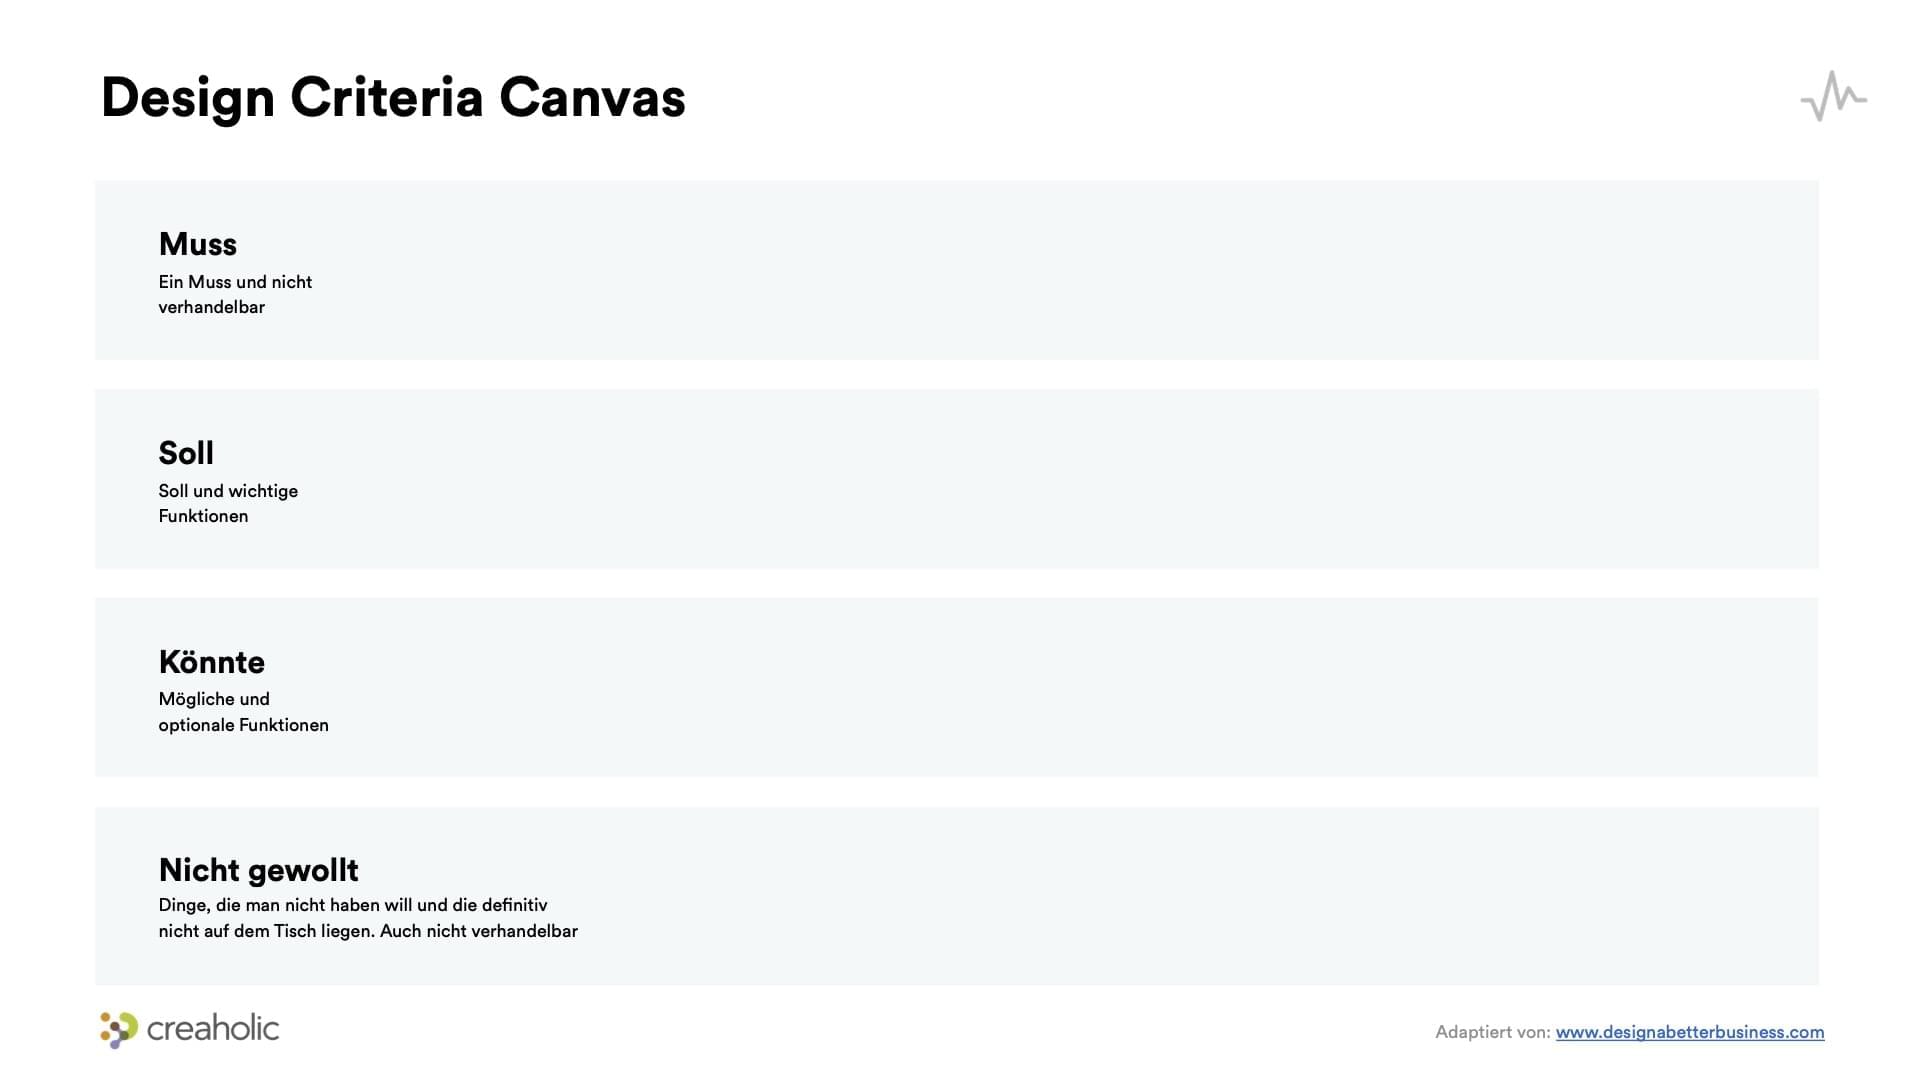 Design Criteria Canvas